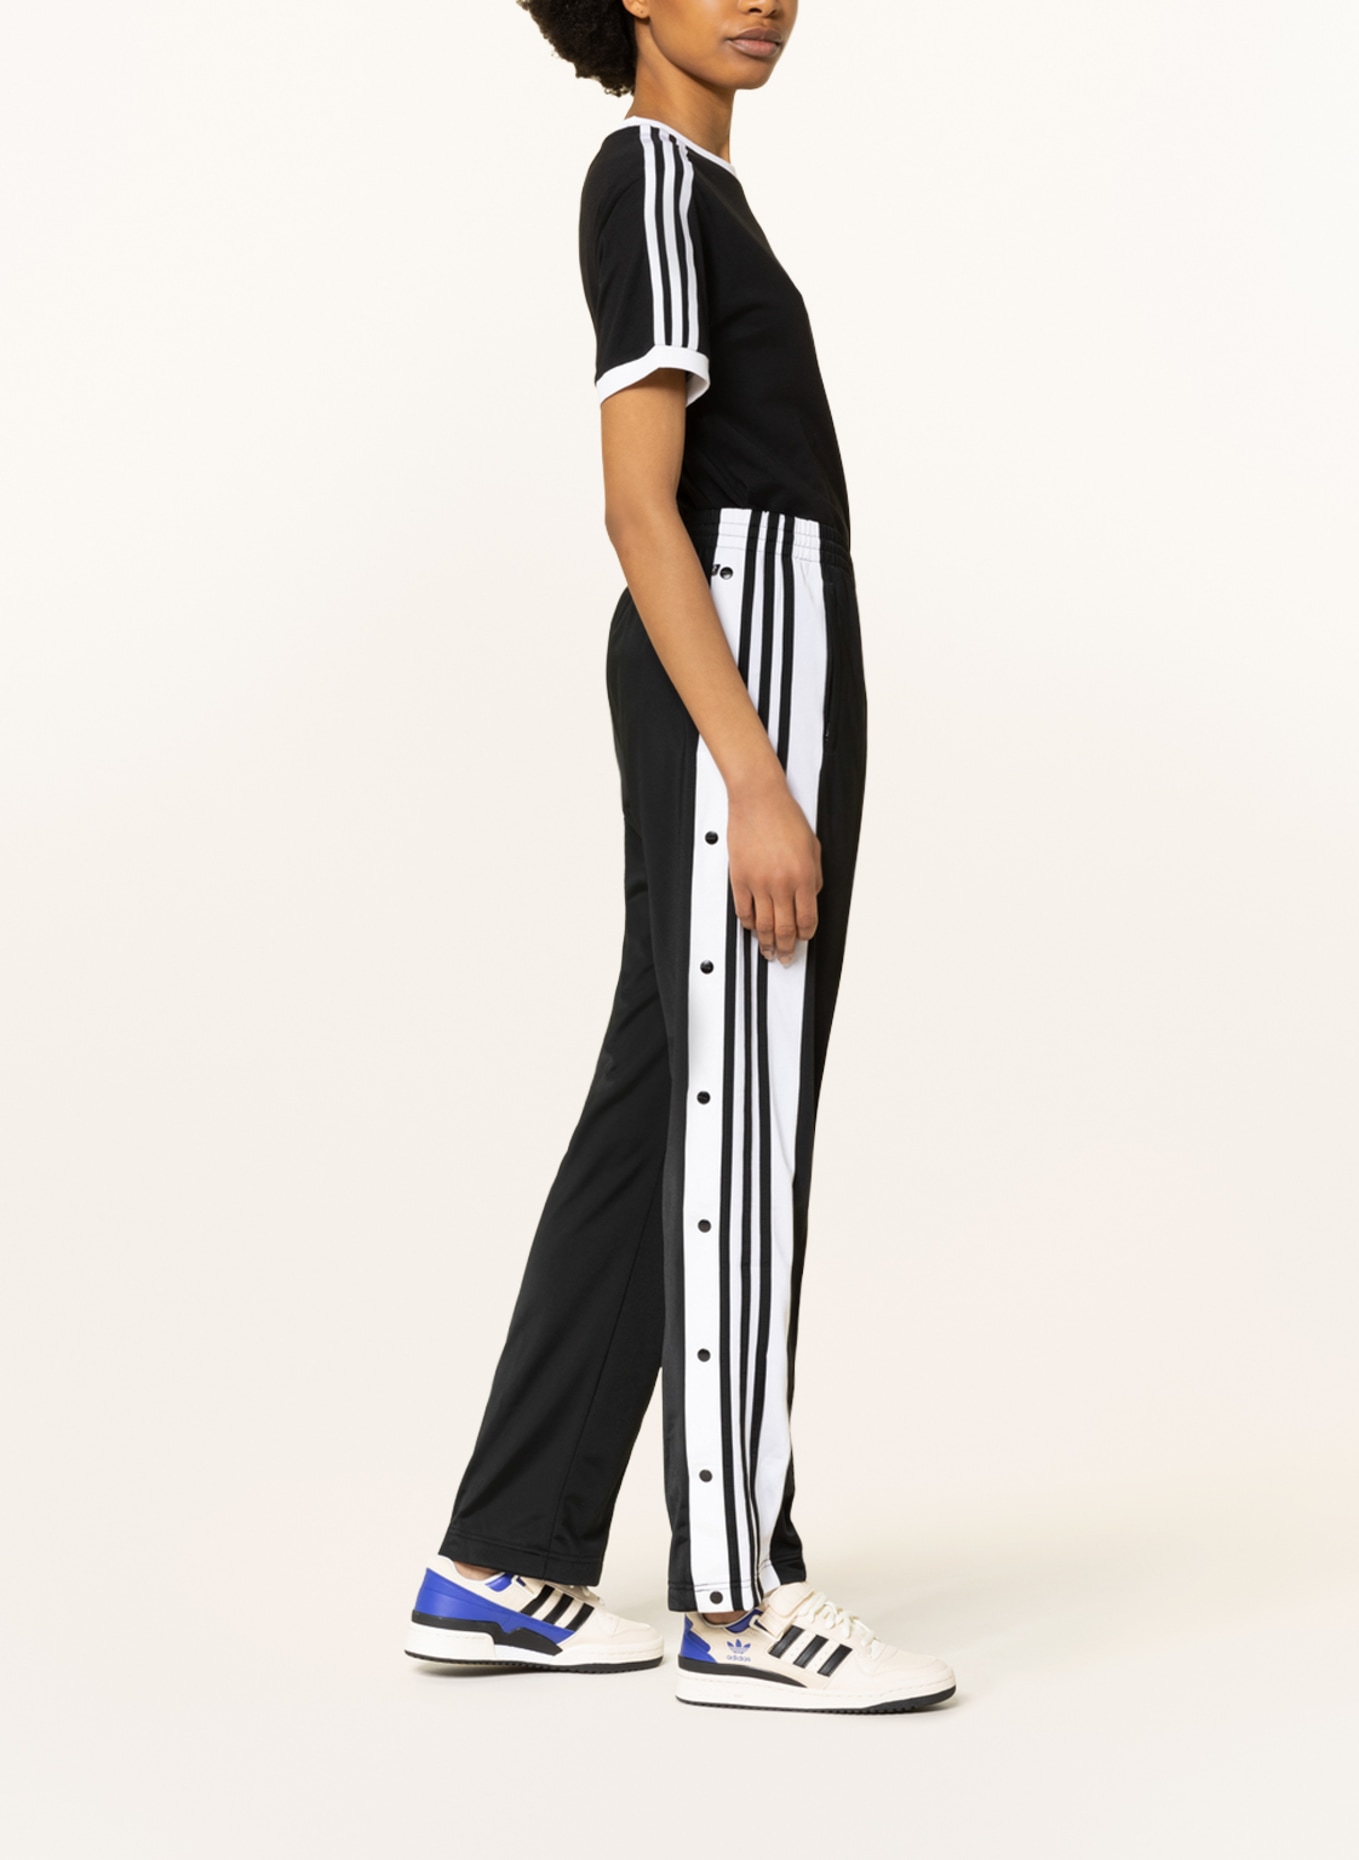 adidas Originals Track pants ADIBREAK with tuxedo stripes in black